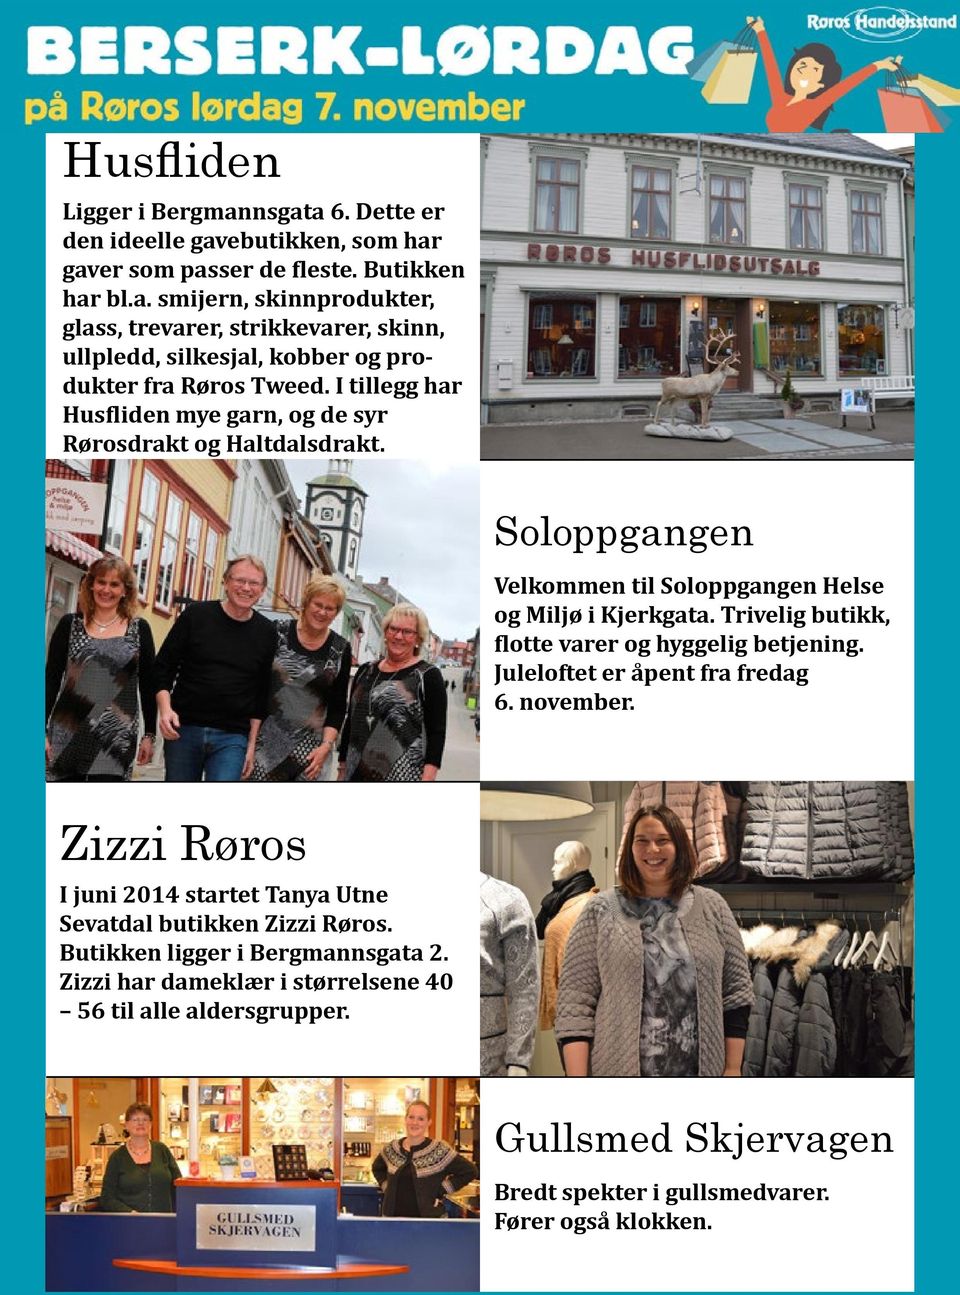 Trivelig butikk, flotte varer og hyggelig betjening. Juleloftet er åpent fra fredag 6. november. Zizzi Røros I juni 2014 startet Tanya Utne Sevatdal butikken Zizzi Røros.